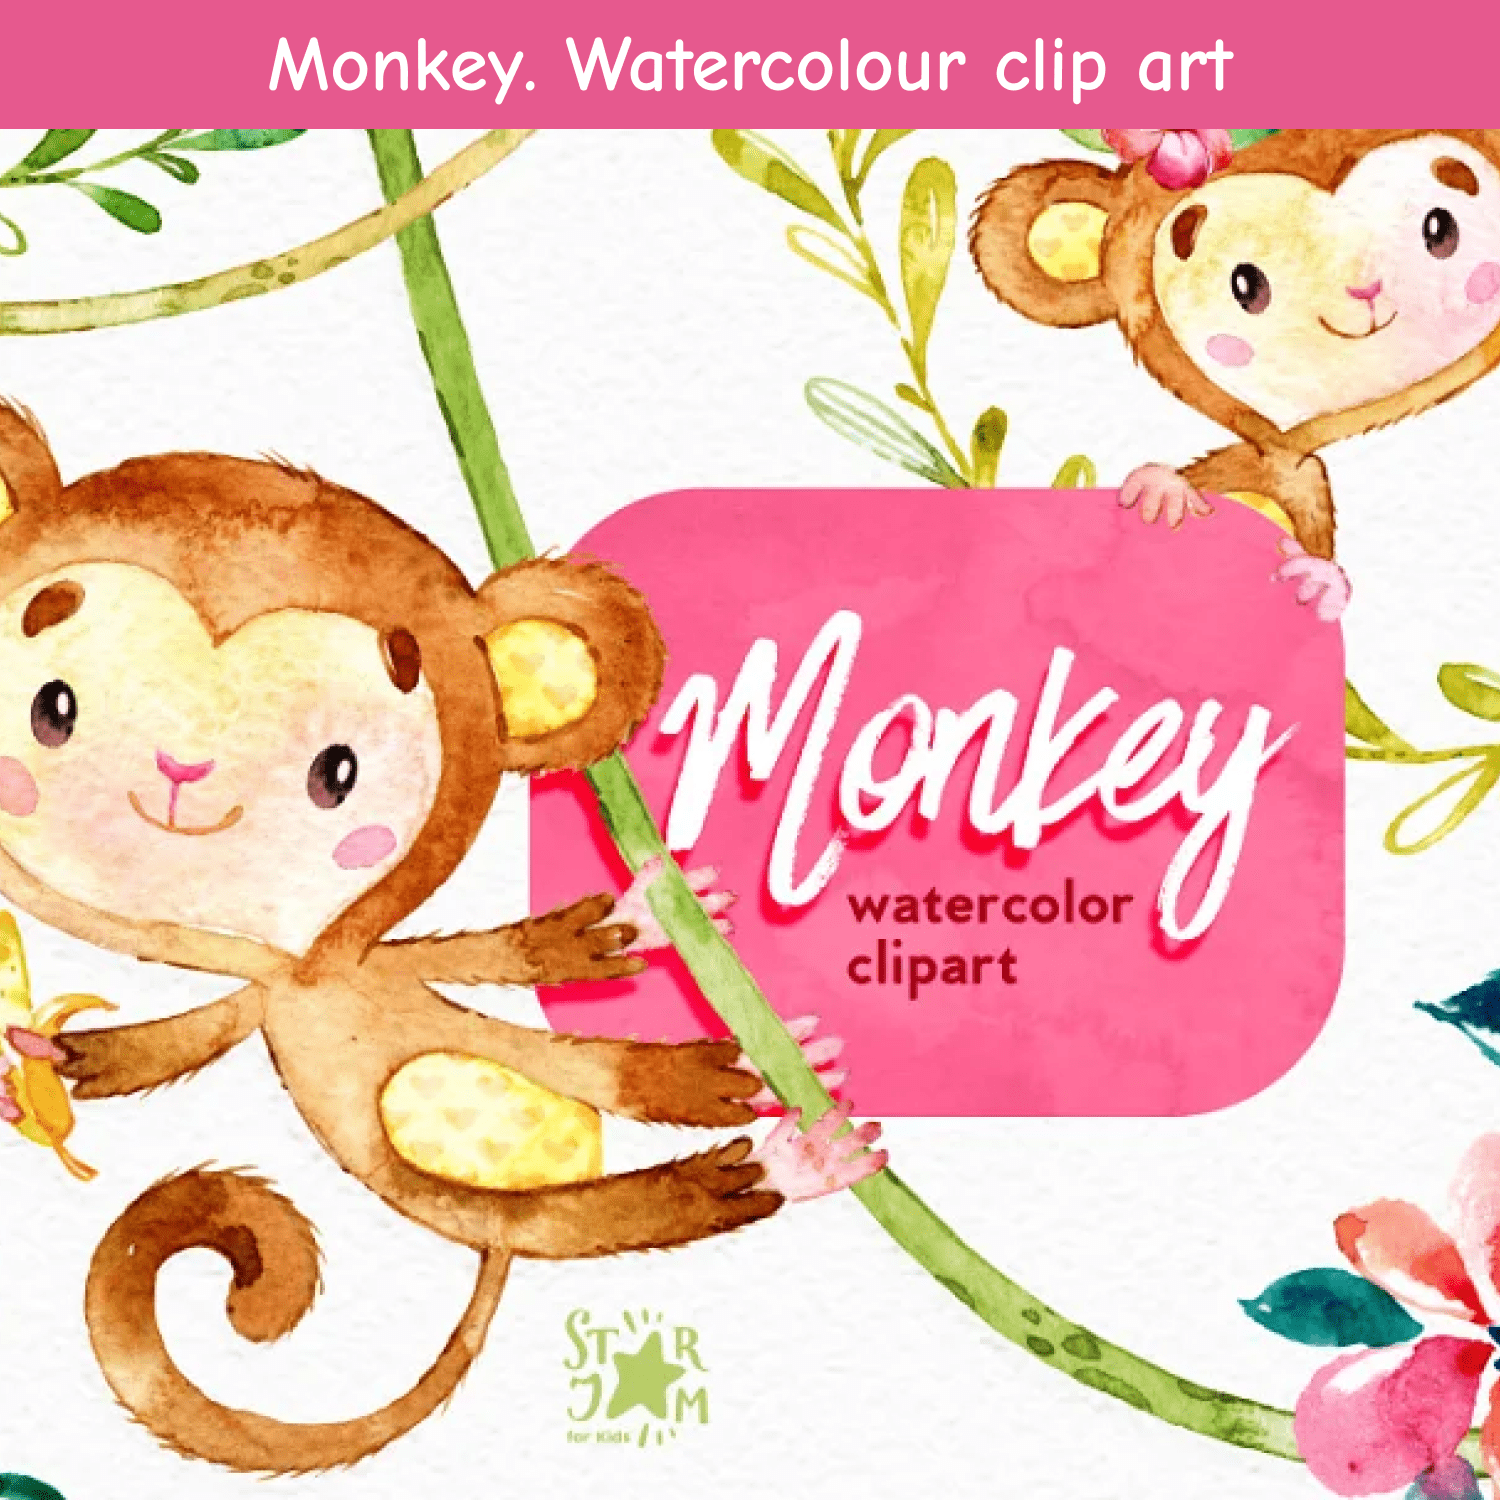 Monkey. Watercolour clip art..